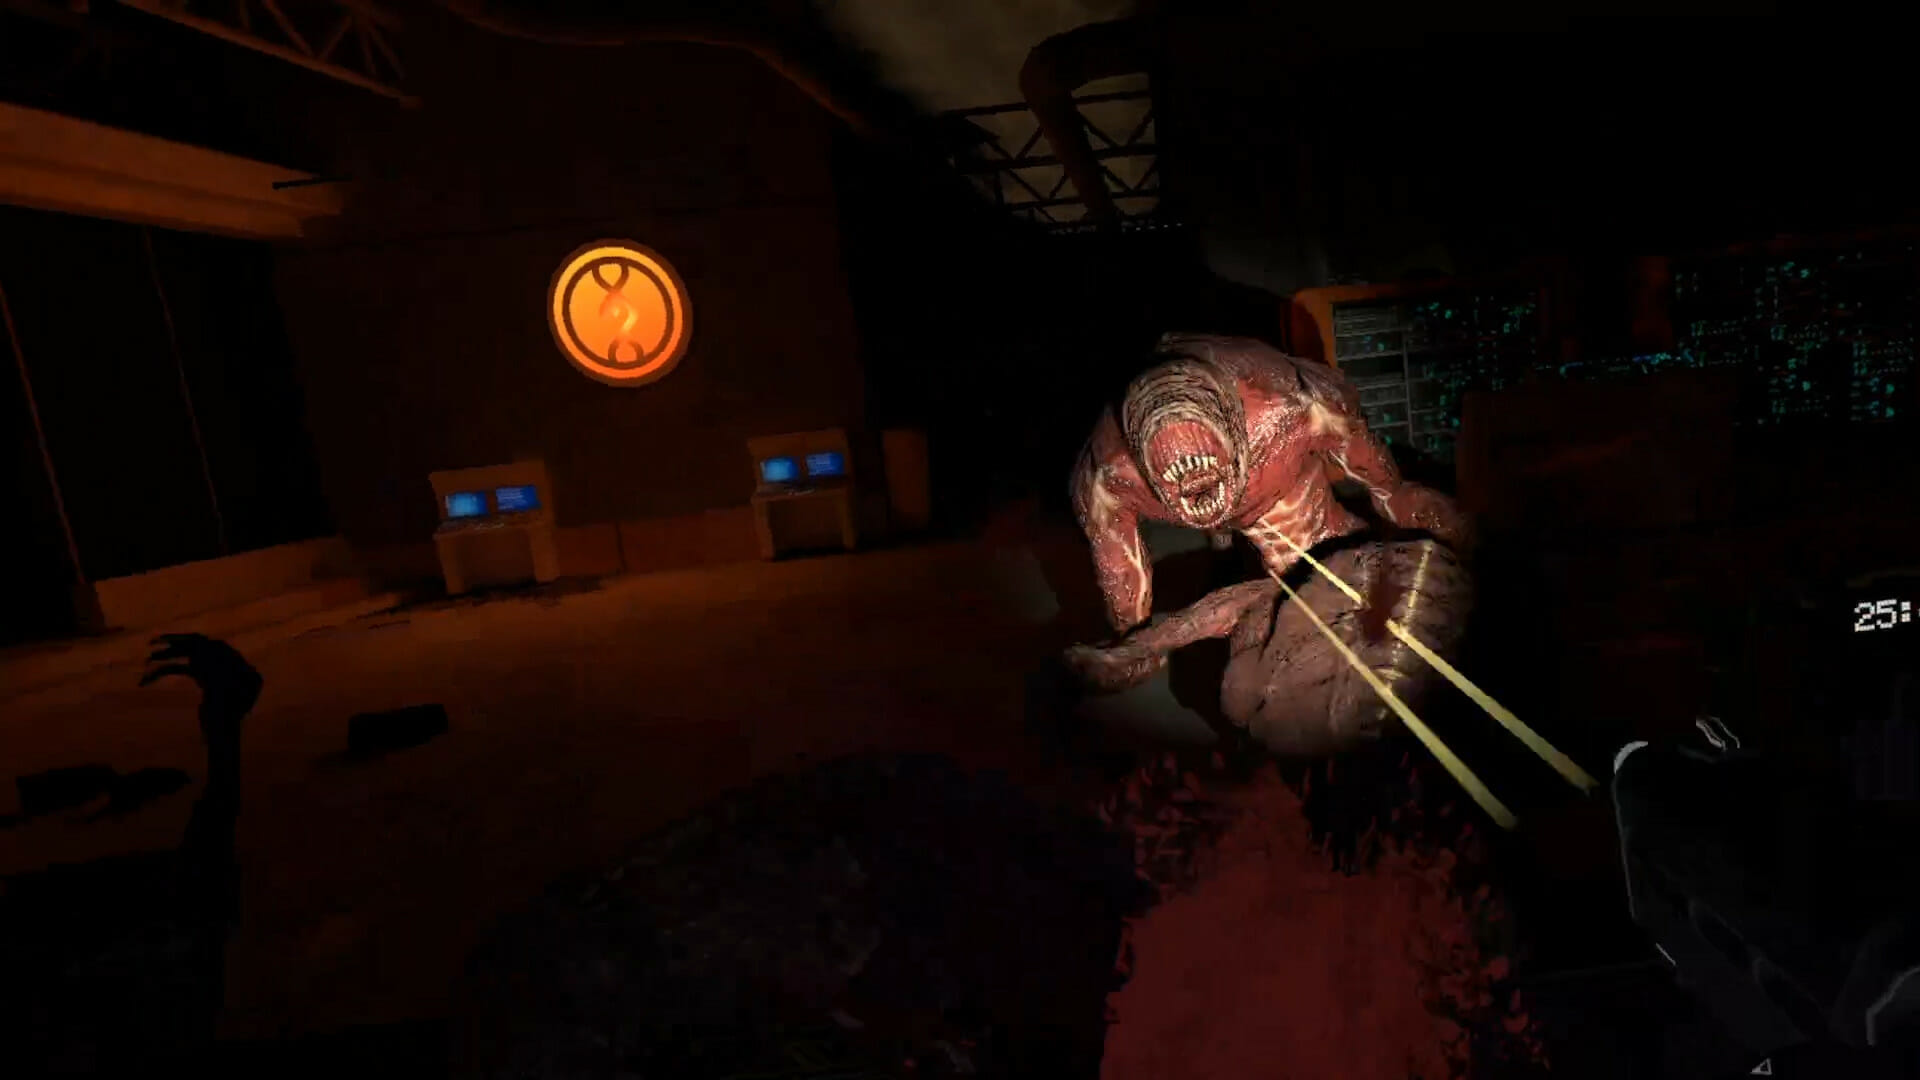 O imagine care arată jucătorul împușcând o creatură